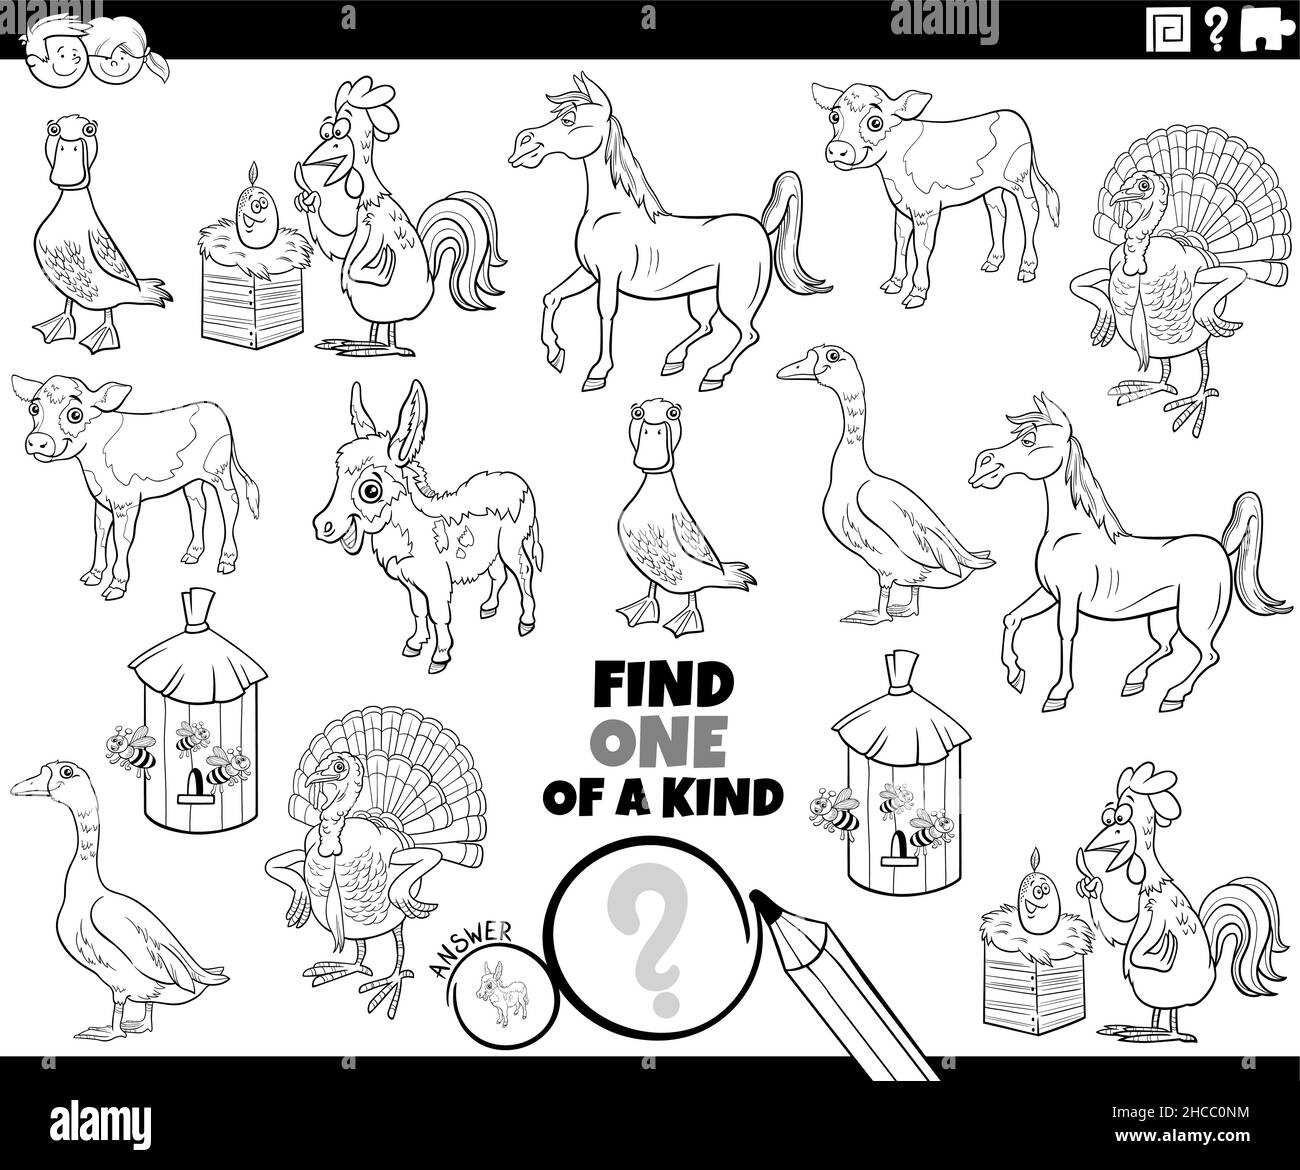 Illustration de dessin animé noir et blanc de Find One of a genre image jeu éducatif avec drôle de caractères animaux de ferme de coloration page de livre Illustration de Vecteur